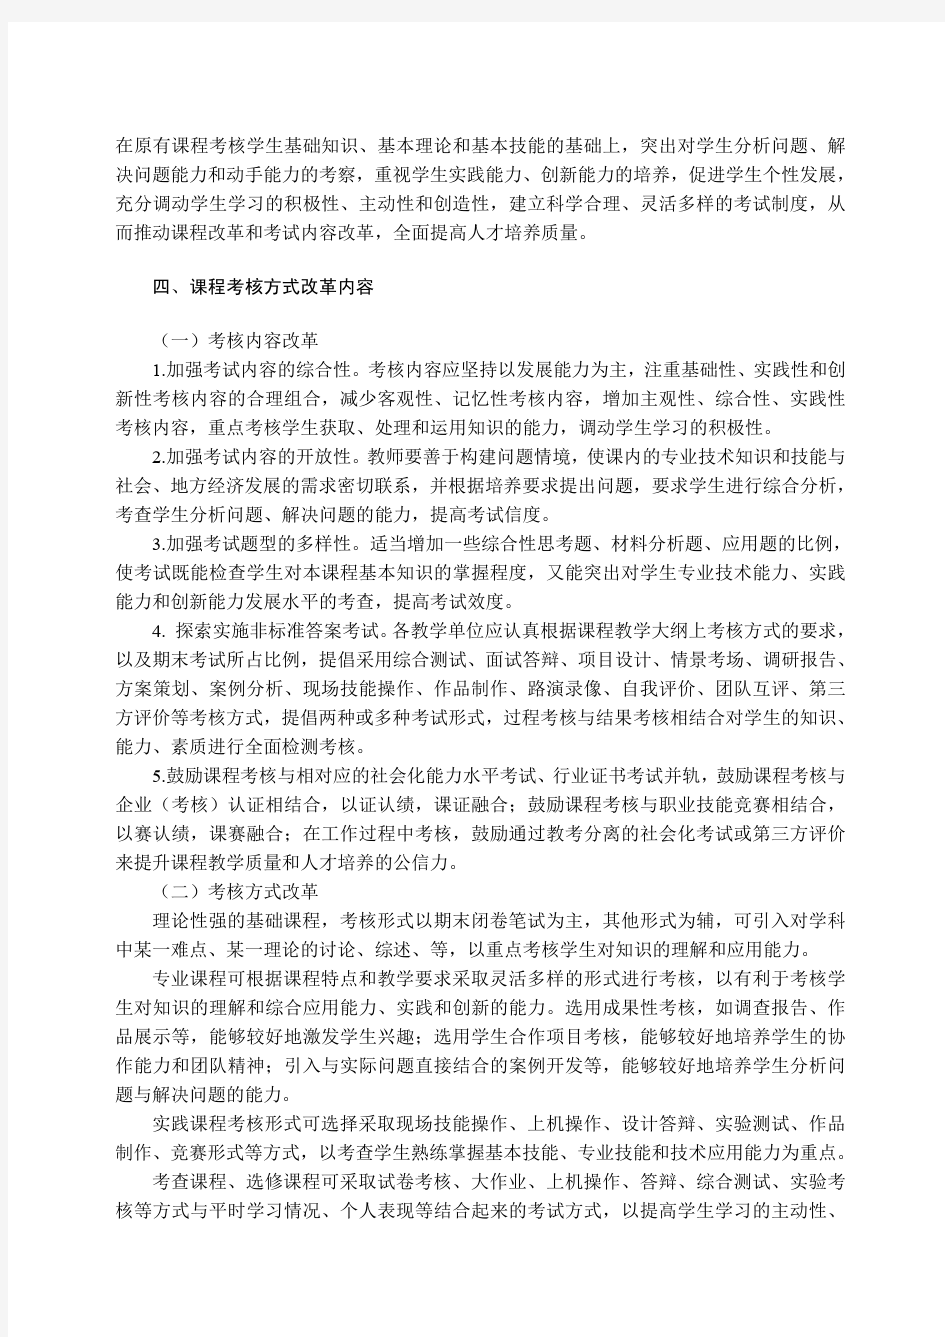 湖南人文科技学院课程考核方式改革实施办法